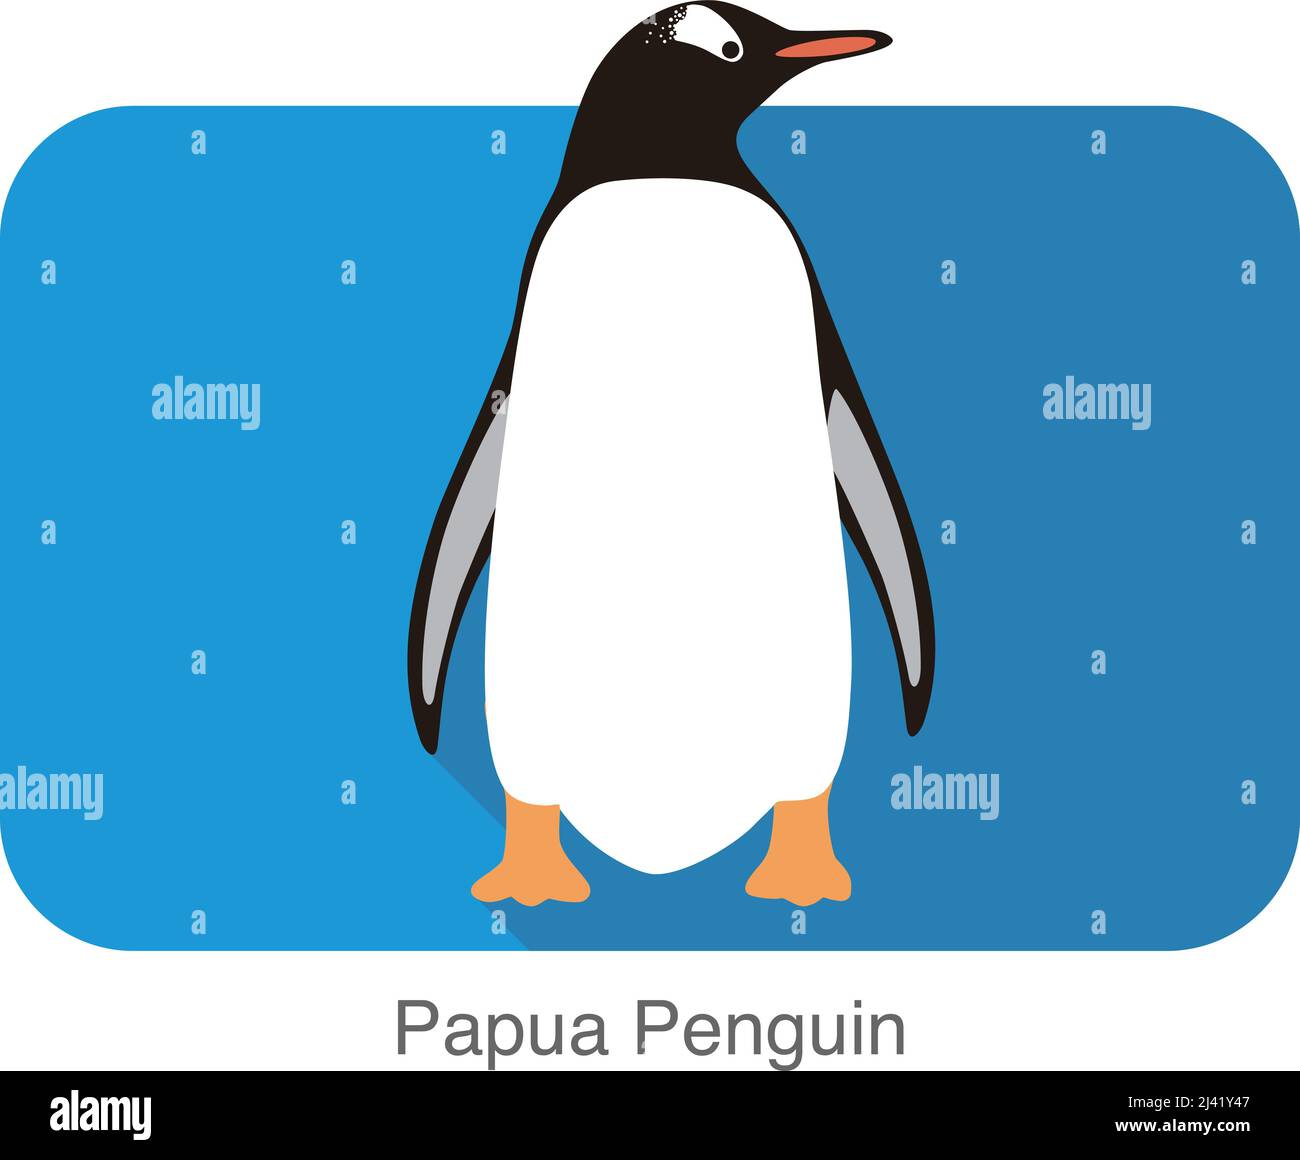 Papua penguin, Gentoo penguin, standing, vector illustration Stock Vector